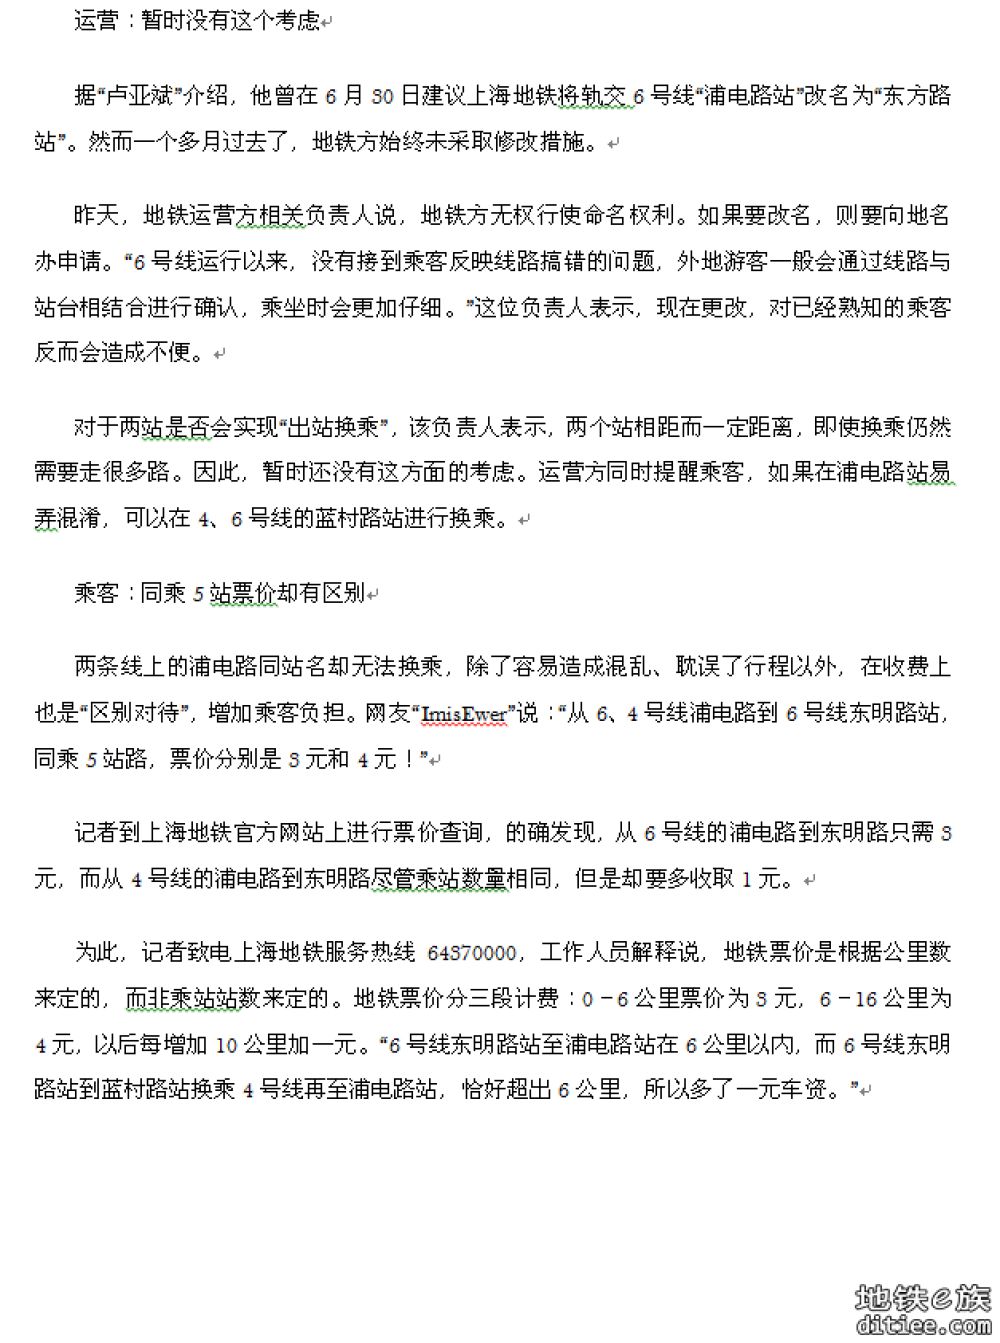 凤凰资讯：上海地铁不同站却同名 4、6号线两个“浦电路...